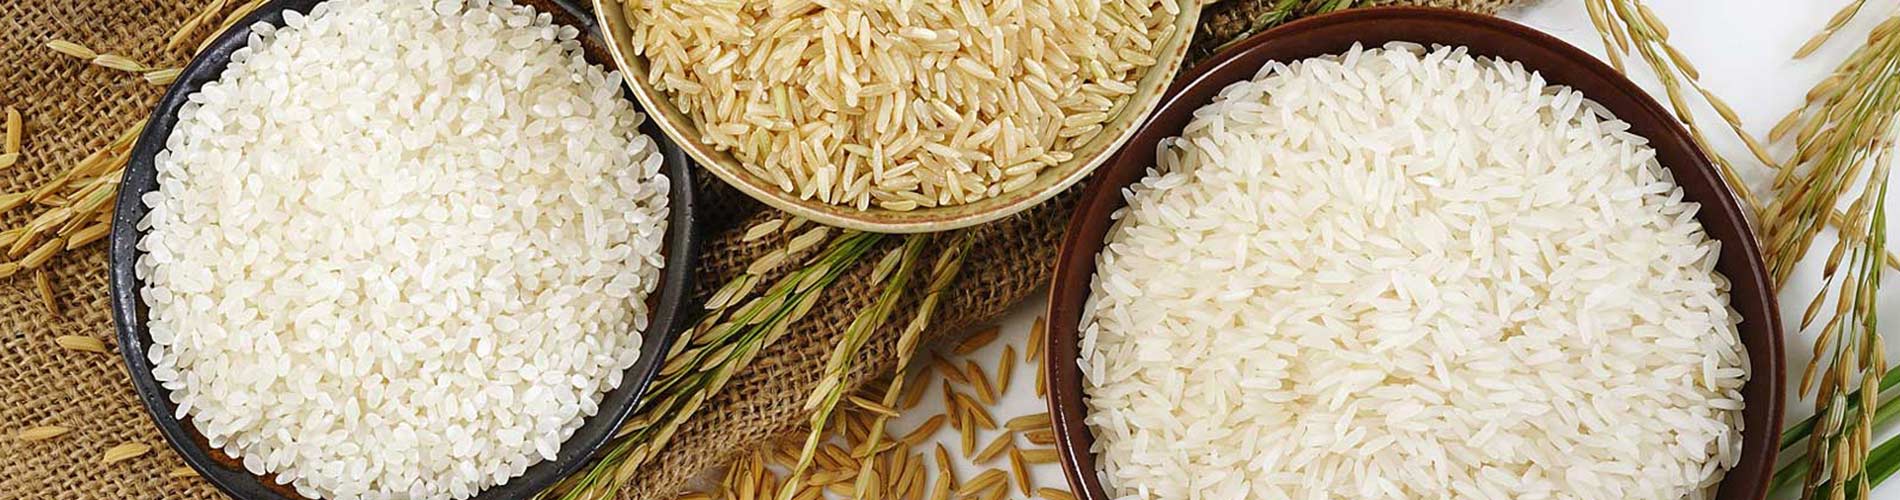 Idly Rice in Tamilnadu